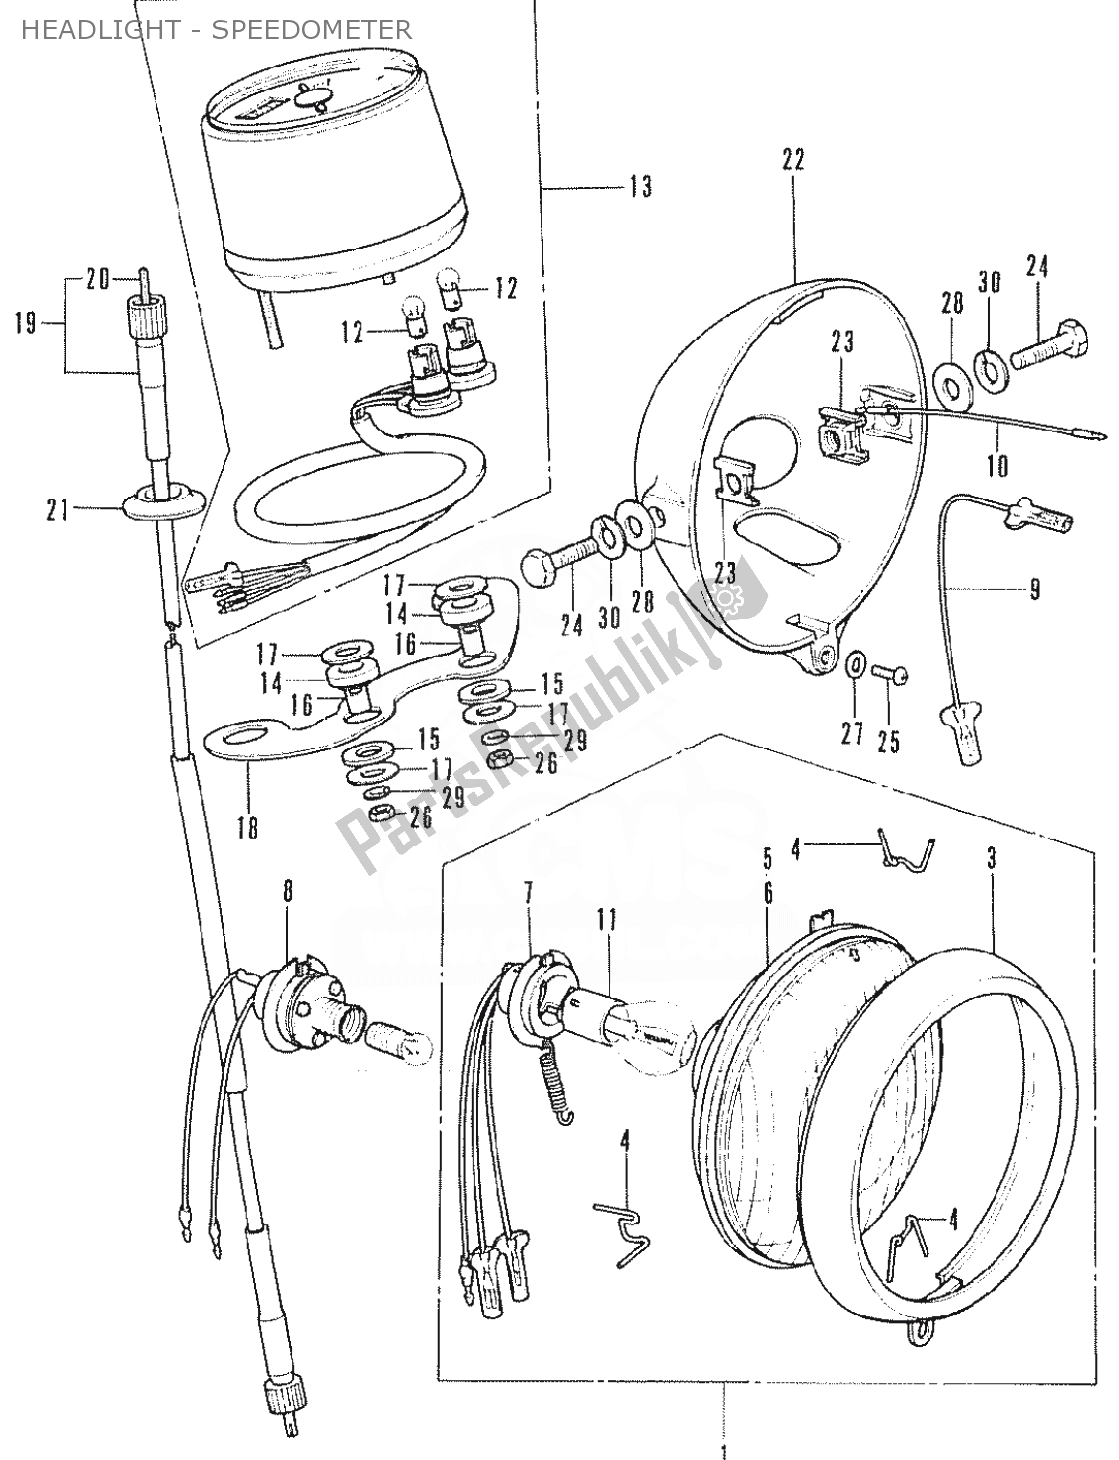 Alle onderdelen voor de Headlight - Speedometer van de Honda SS 50 1950 - 2023